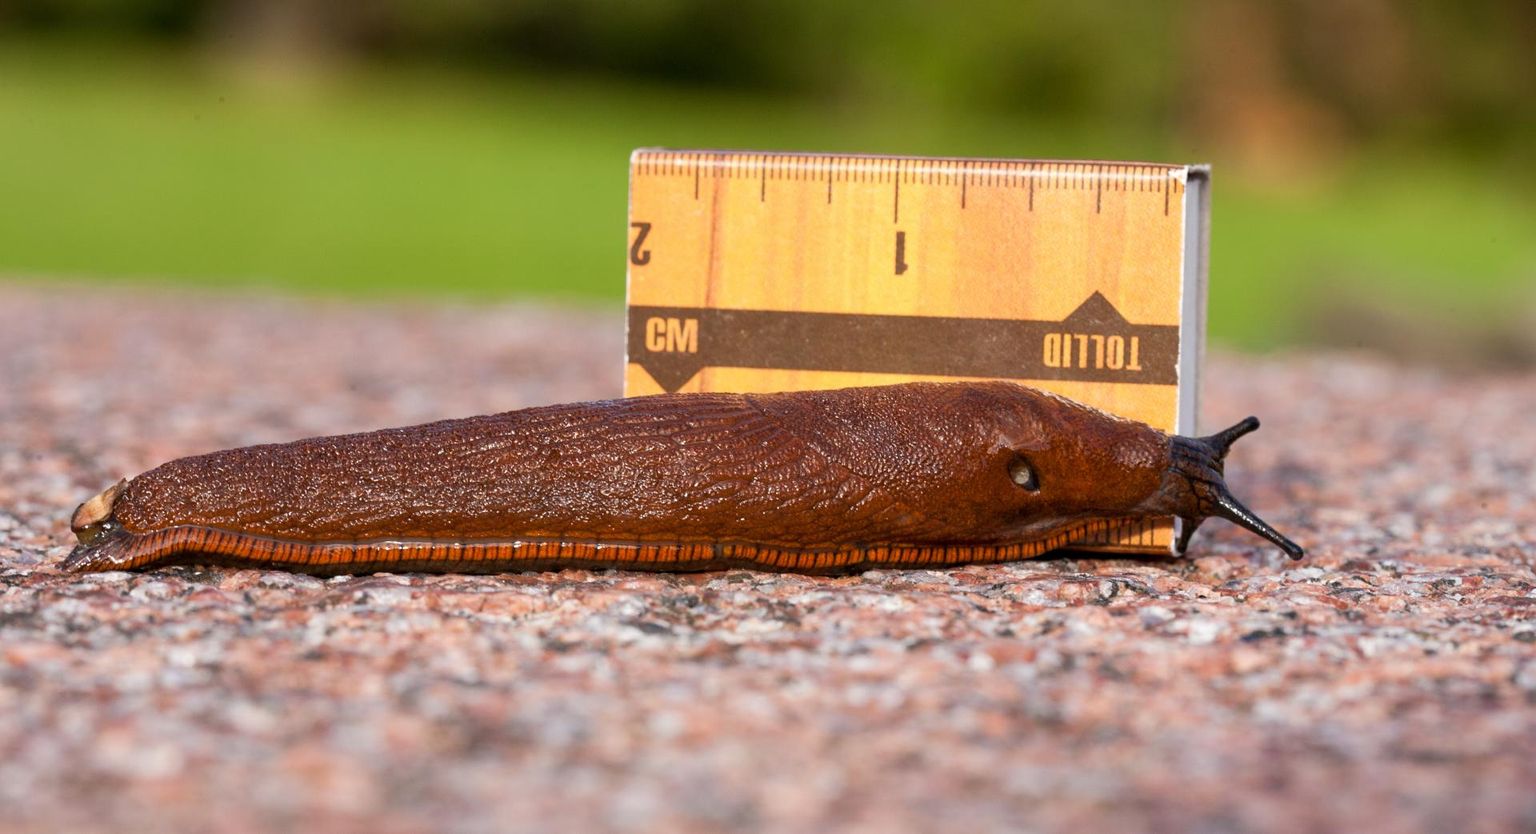 Lusitaania teetigu, nagu ka kodumaised kahjutud seateod, võivad kasvada mitme sentimeetri pikkuseks. On leitud isegi ligi 20-sentimeetriseid isendeid.